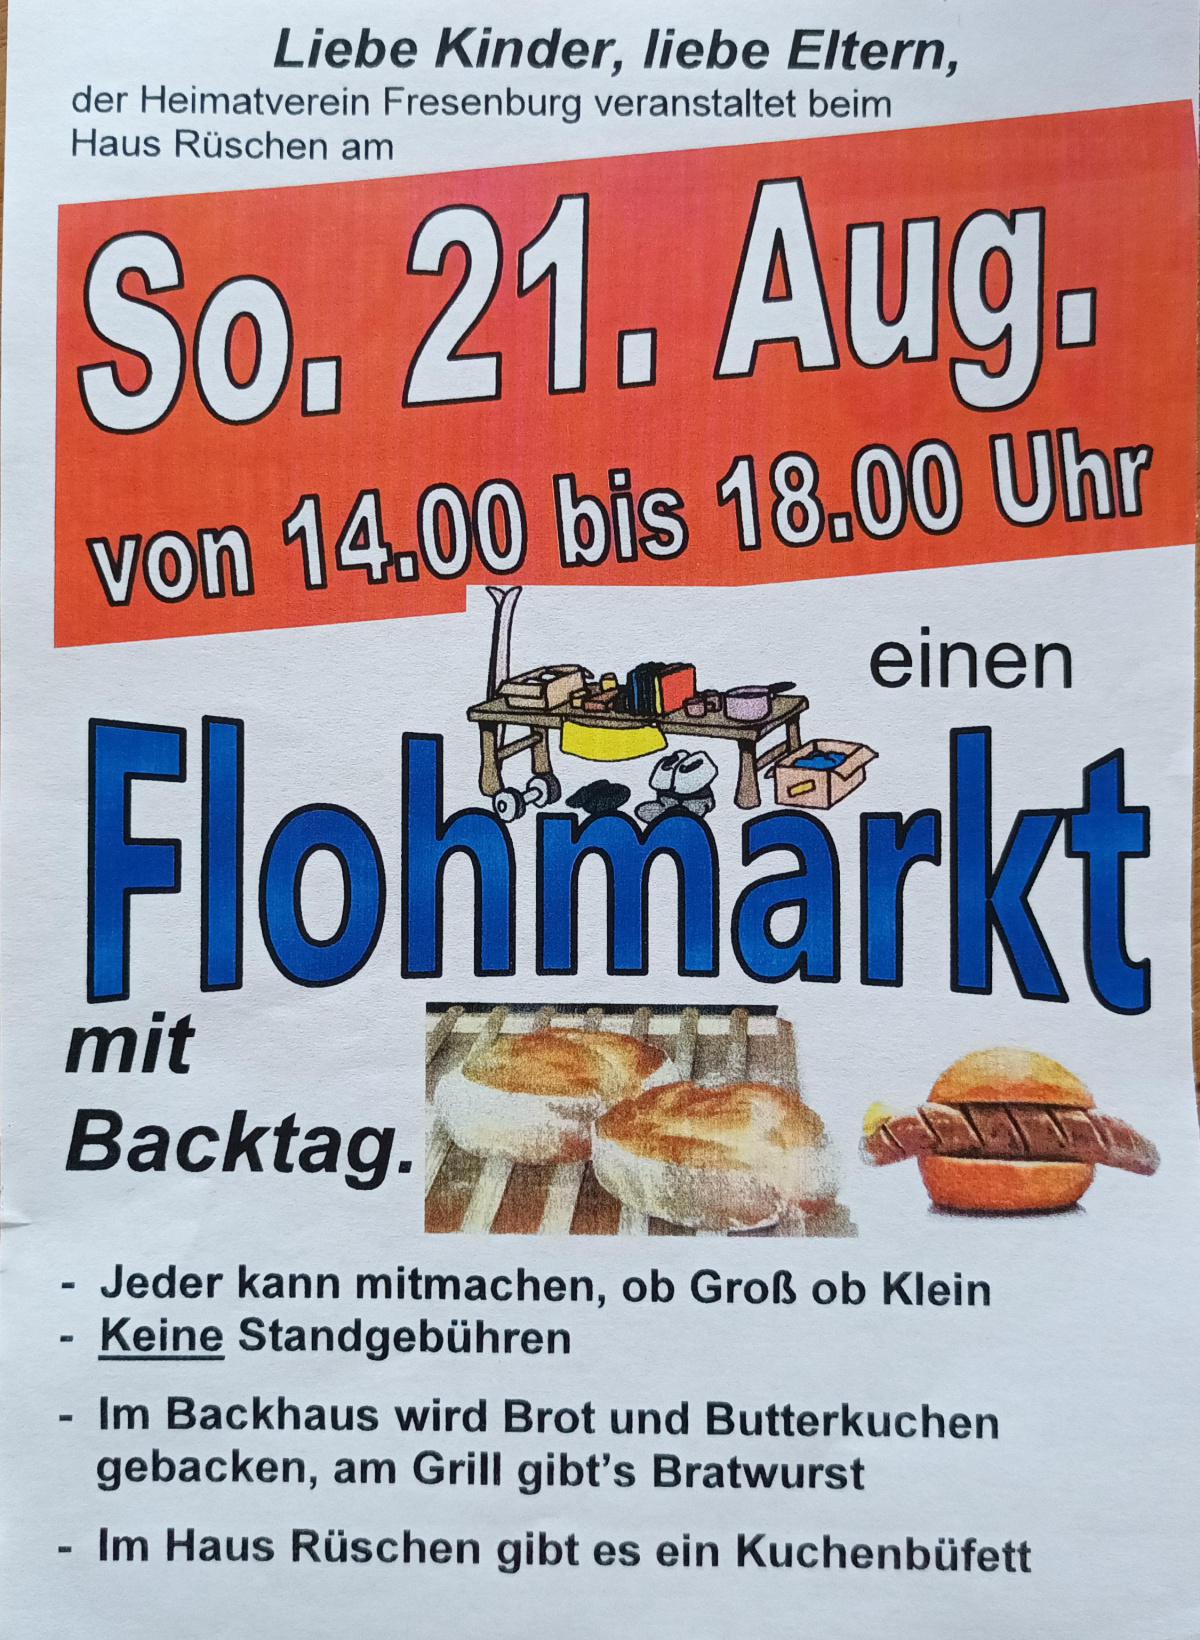 Heimatverein Fresenburg: Flohmarkt mit Backtag